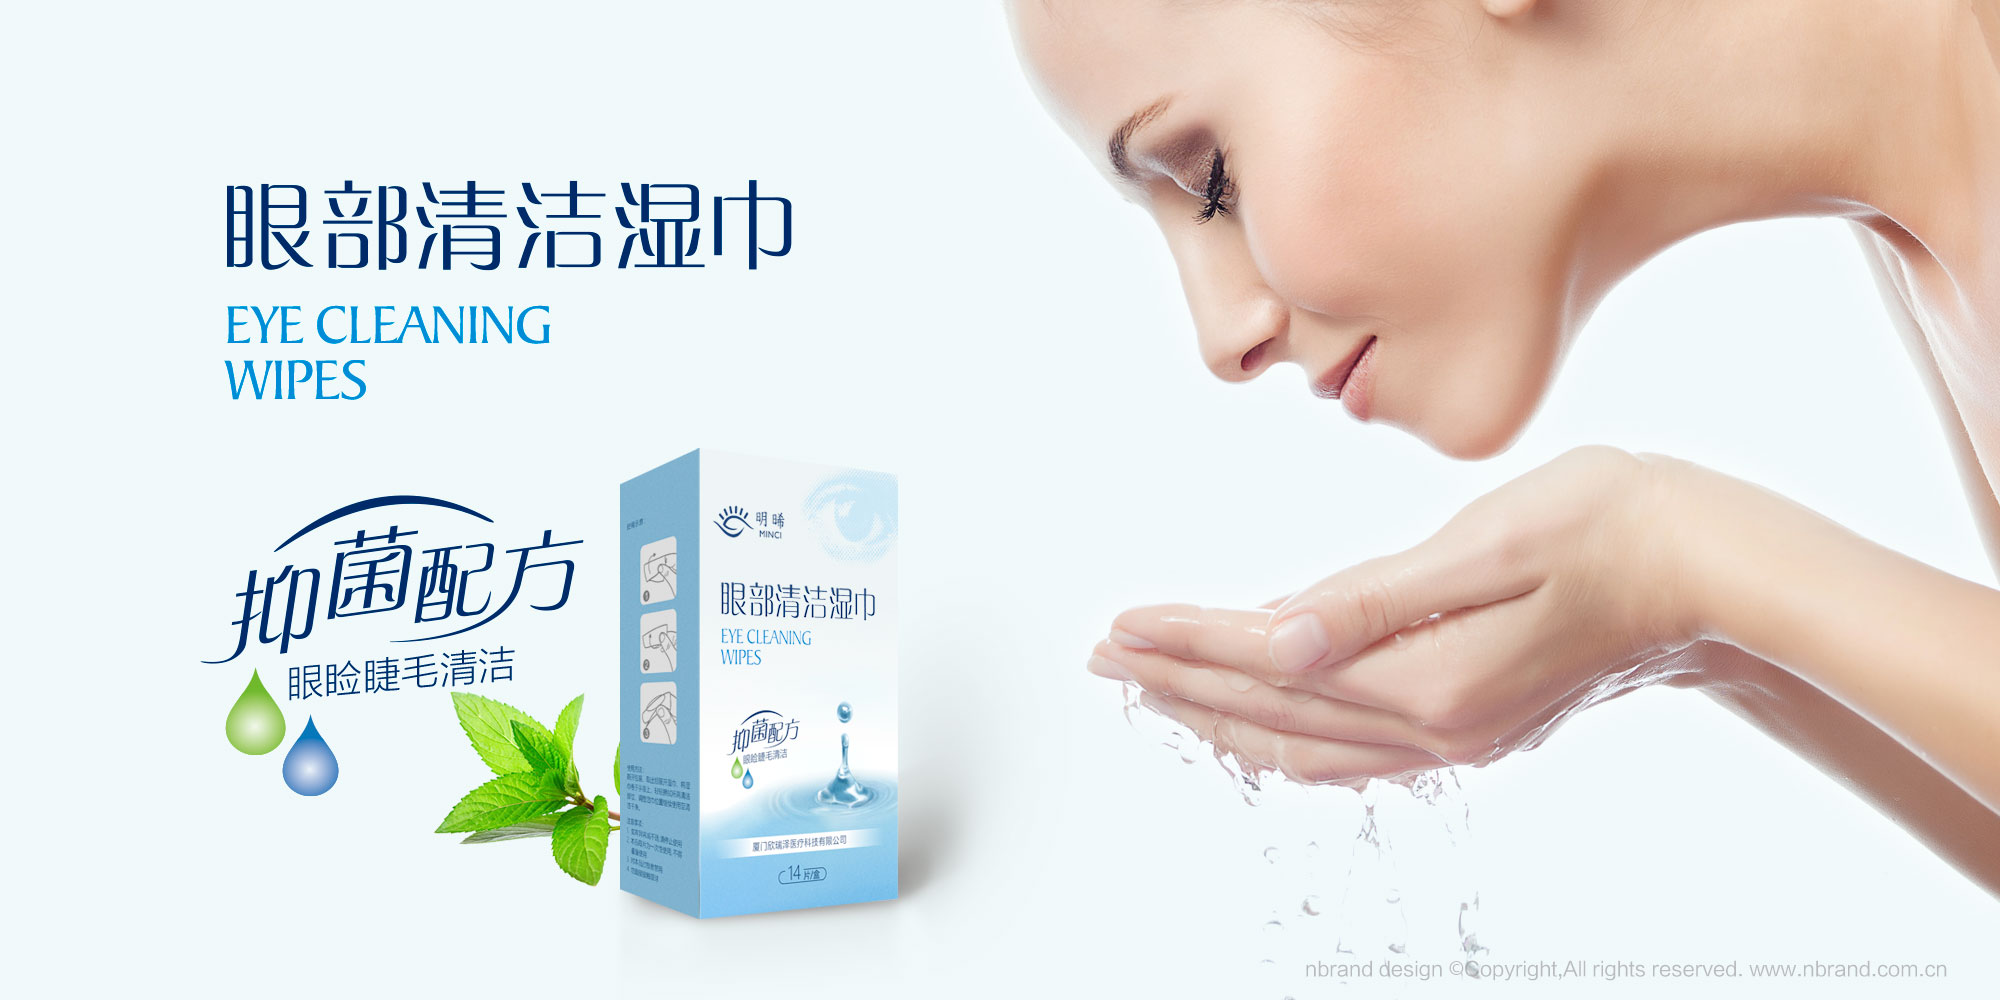 美容医疗: 明��眼部清洁湿巾产品外包装设计、软包装设计